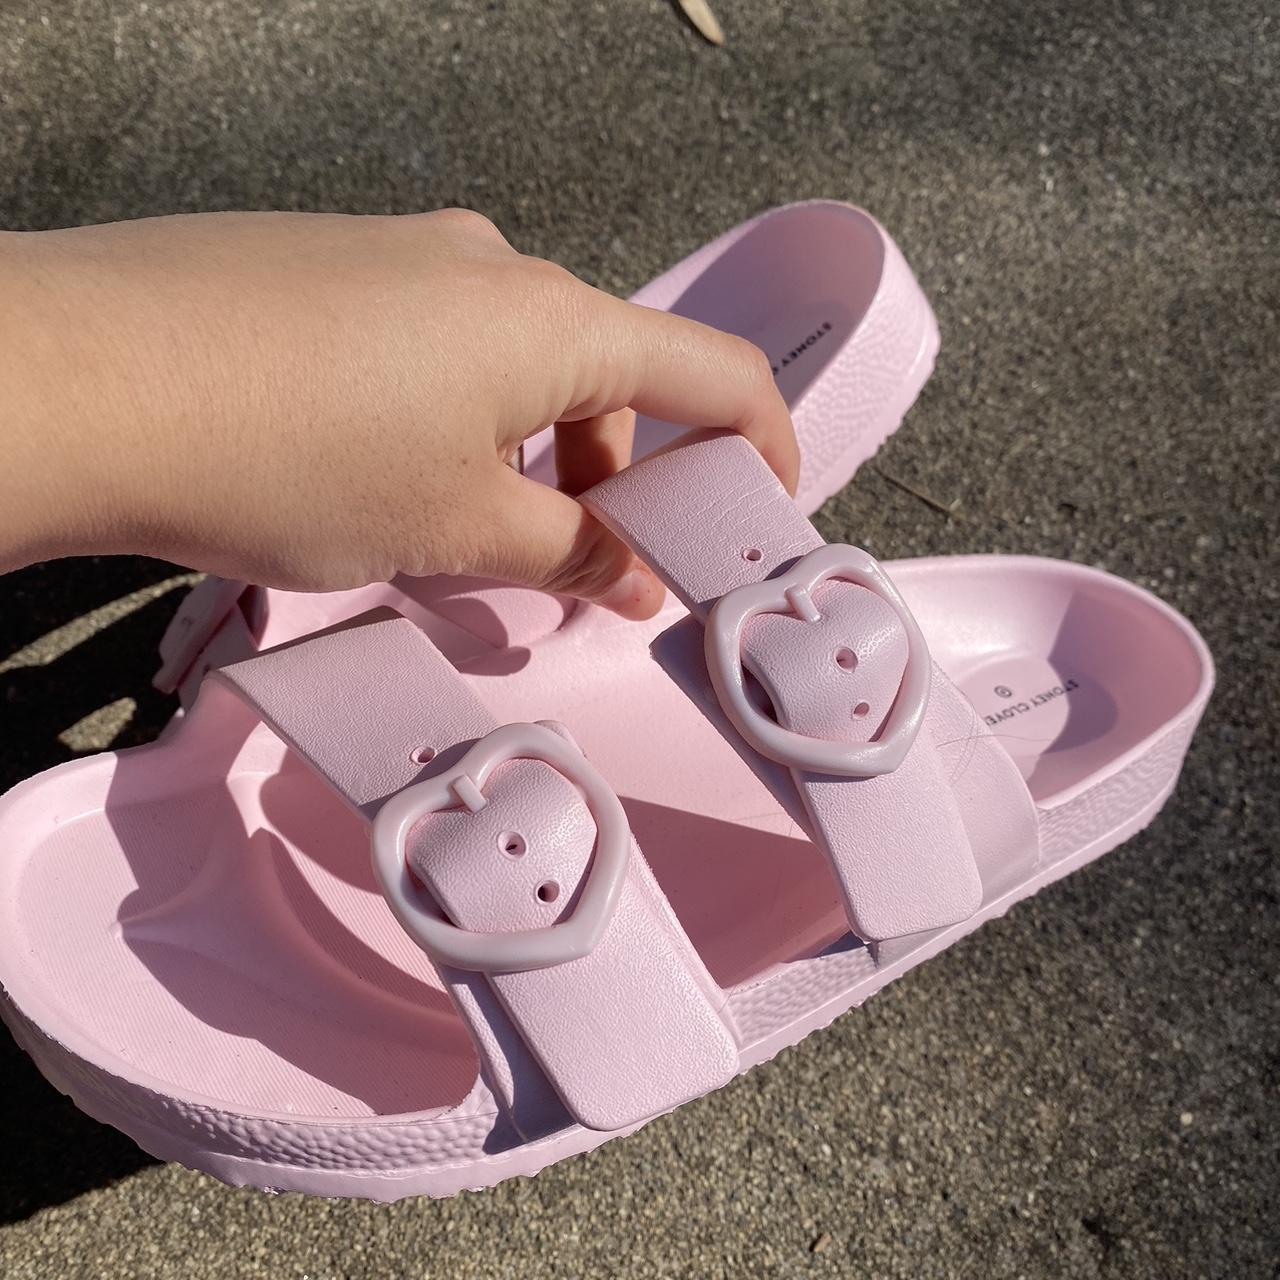 Target Women's Pink Slides